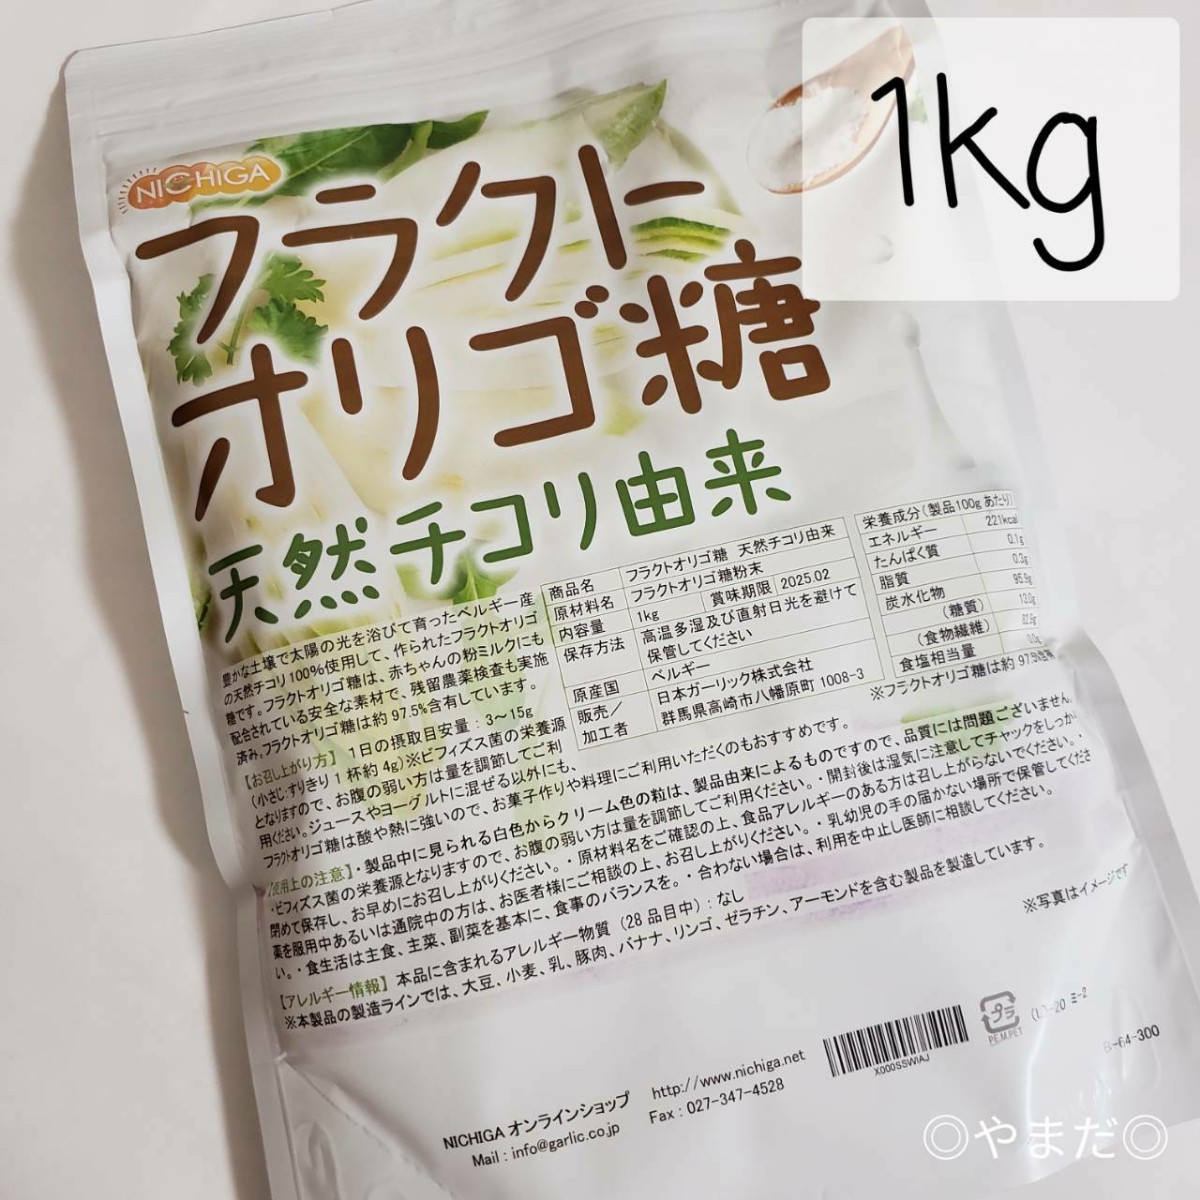 [ новый товар нераспечатанный товар ]nichigaNICHIGAflaktooligo сахар 1kg натуральный цикорий ..